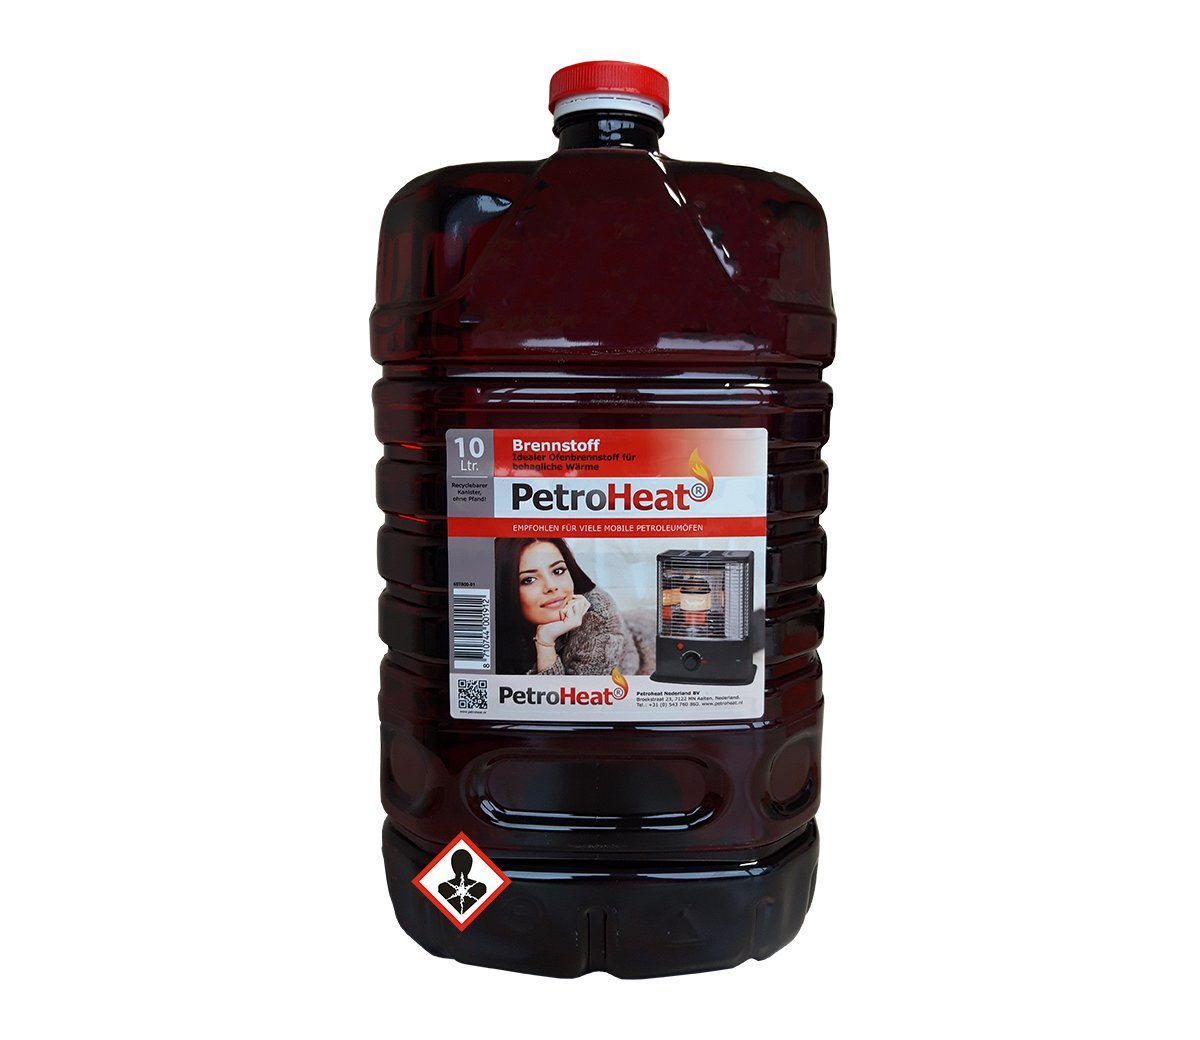 PetroHeat Petroleum 10 Liter Brennstoff geruchsarm für Petroleumofen, für mobile Petroleum-Heizung, Petroleumöfen, geruchsarm